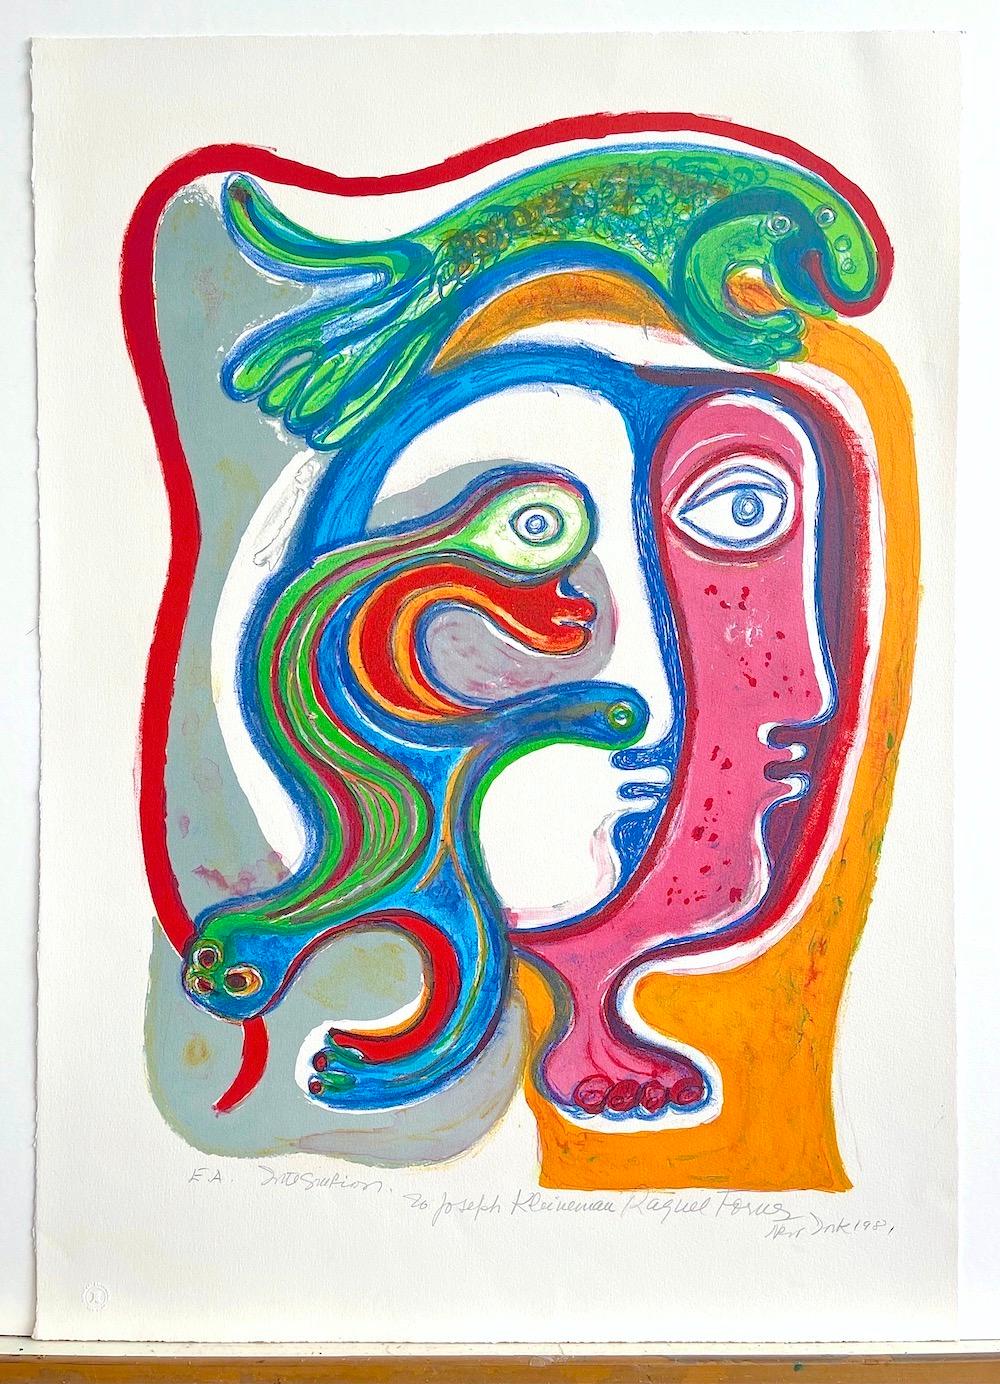 Raquel Forner (1902-1988) Argentinische Malerin und Grafikerin, geboren 1902 in Buenos Aires und gestorben 1988 in derselben Stadt, gilt als eine der besten argentinischen Malerinnen der zweiten Hälfte des 20. Jahrhunderts. INTEGRACION ist eine